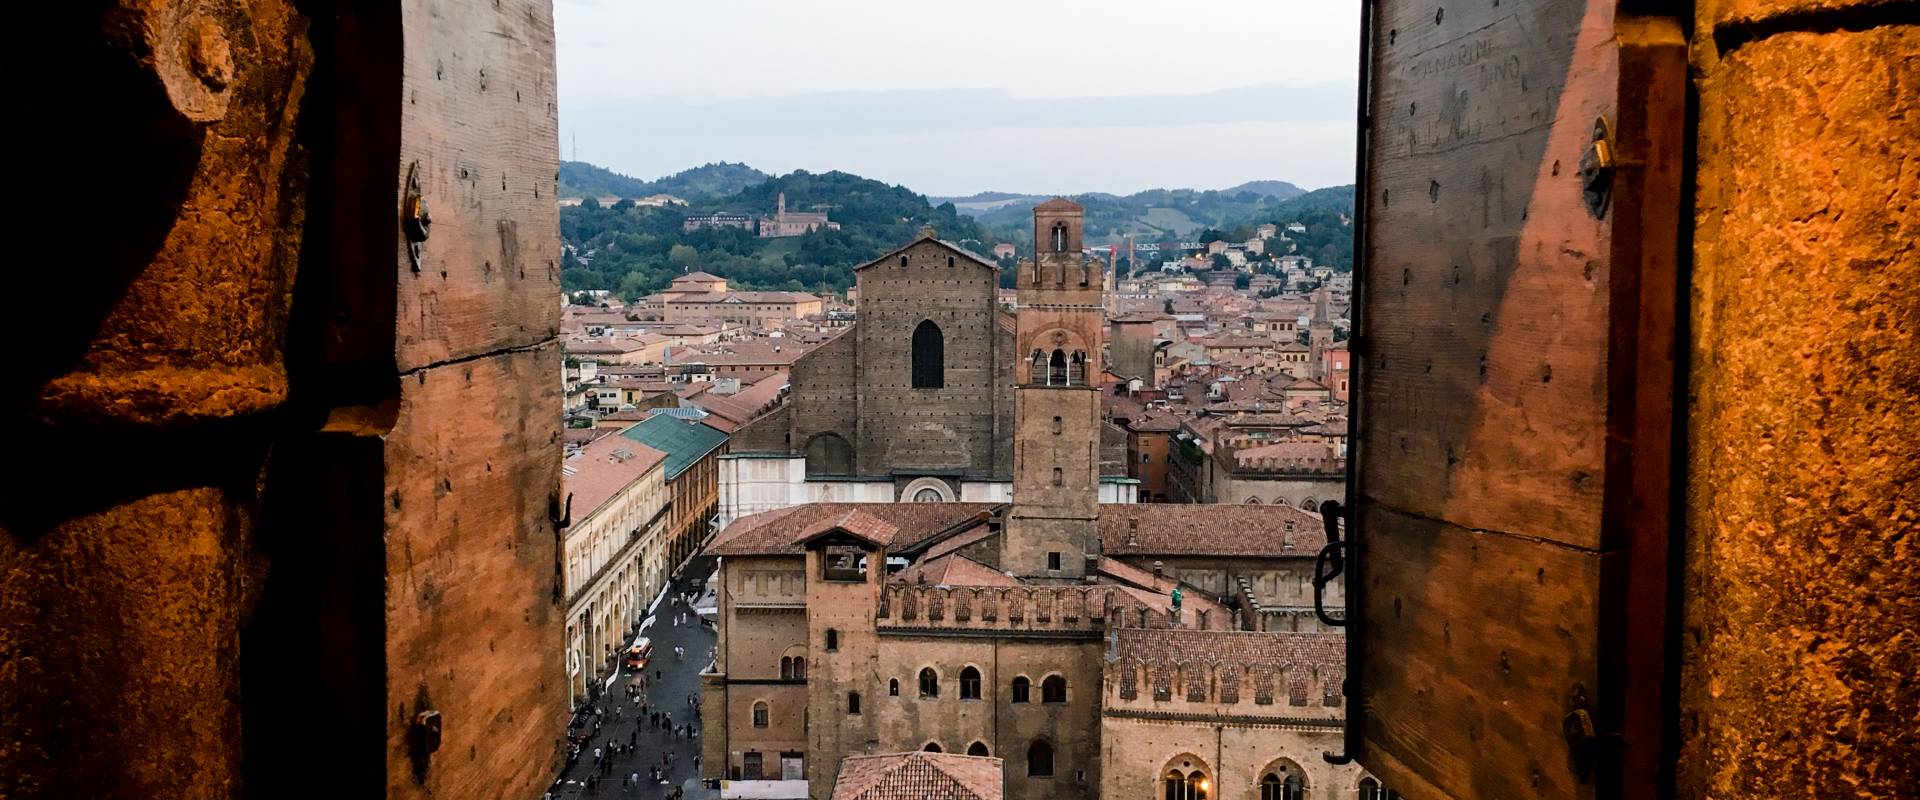 Palazzo Re Enzo e la Basilica di San Petronio visti dal campanile della Cattedrale di San Pietro foto di Roberto Carisi